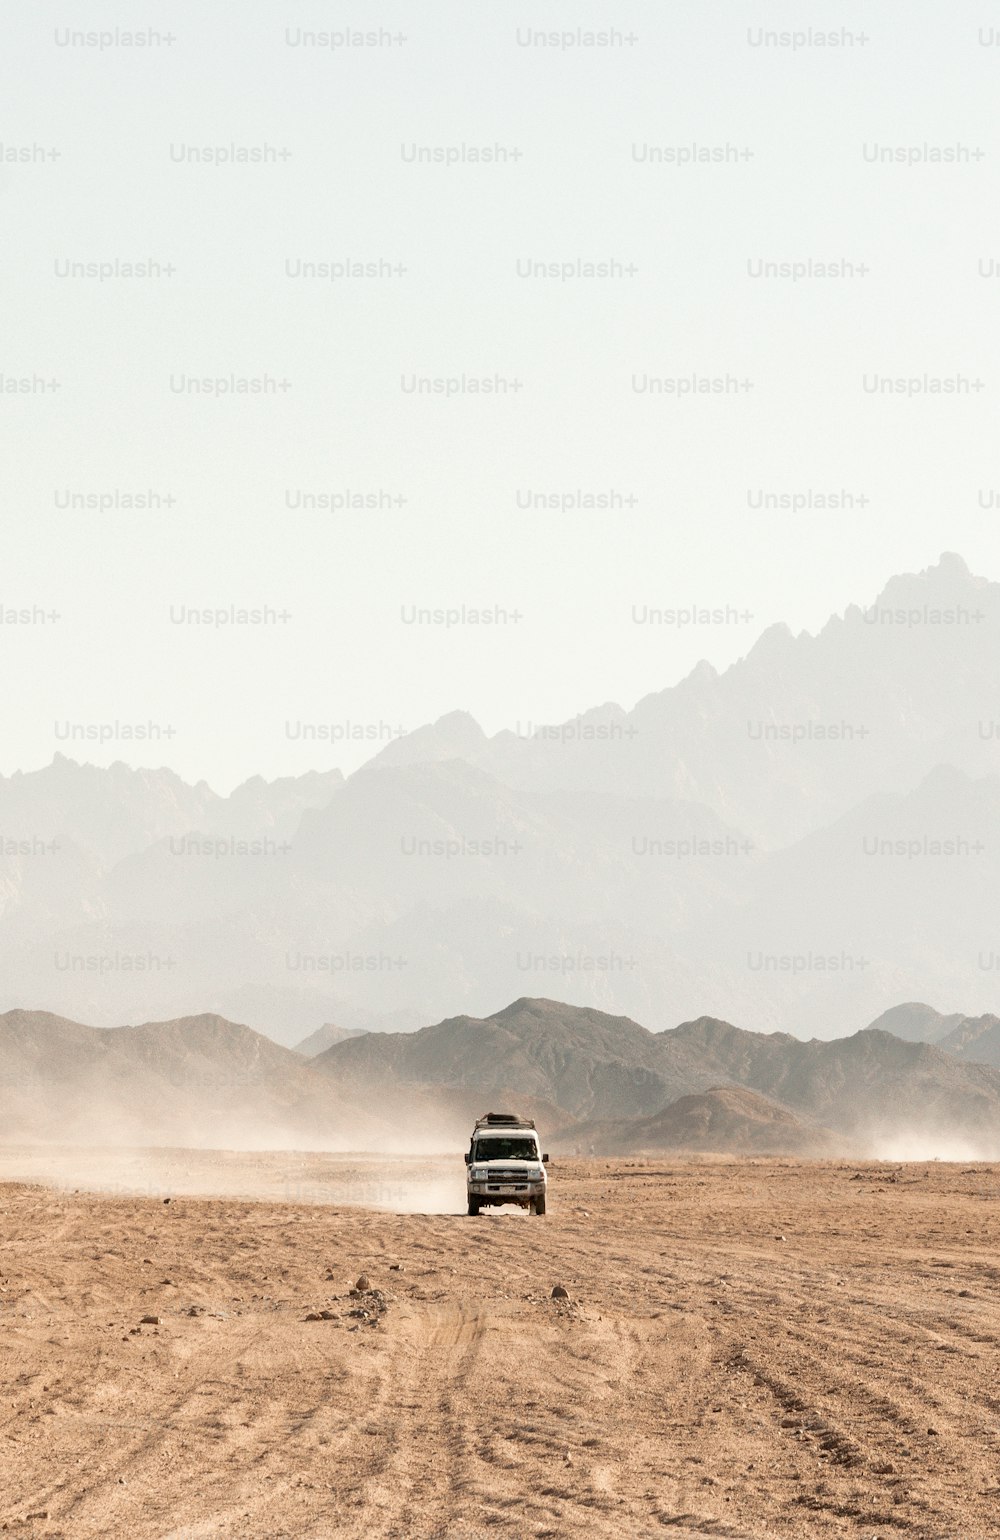 Un camion che attraversa un deserto con le montagne sullo sfondo